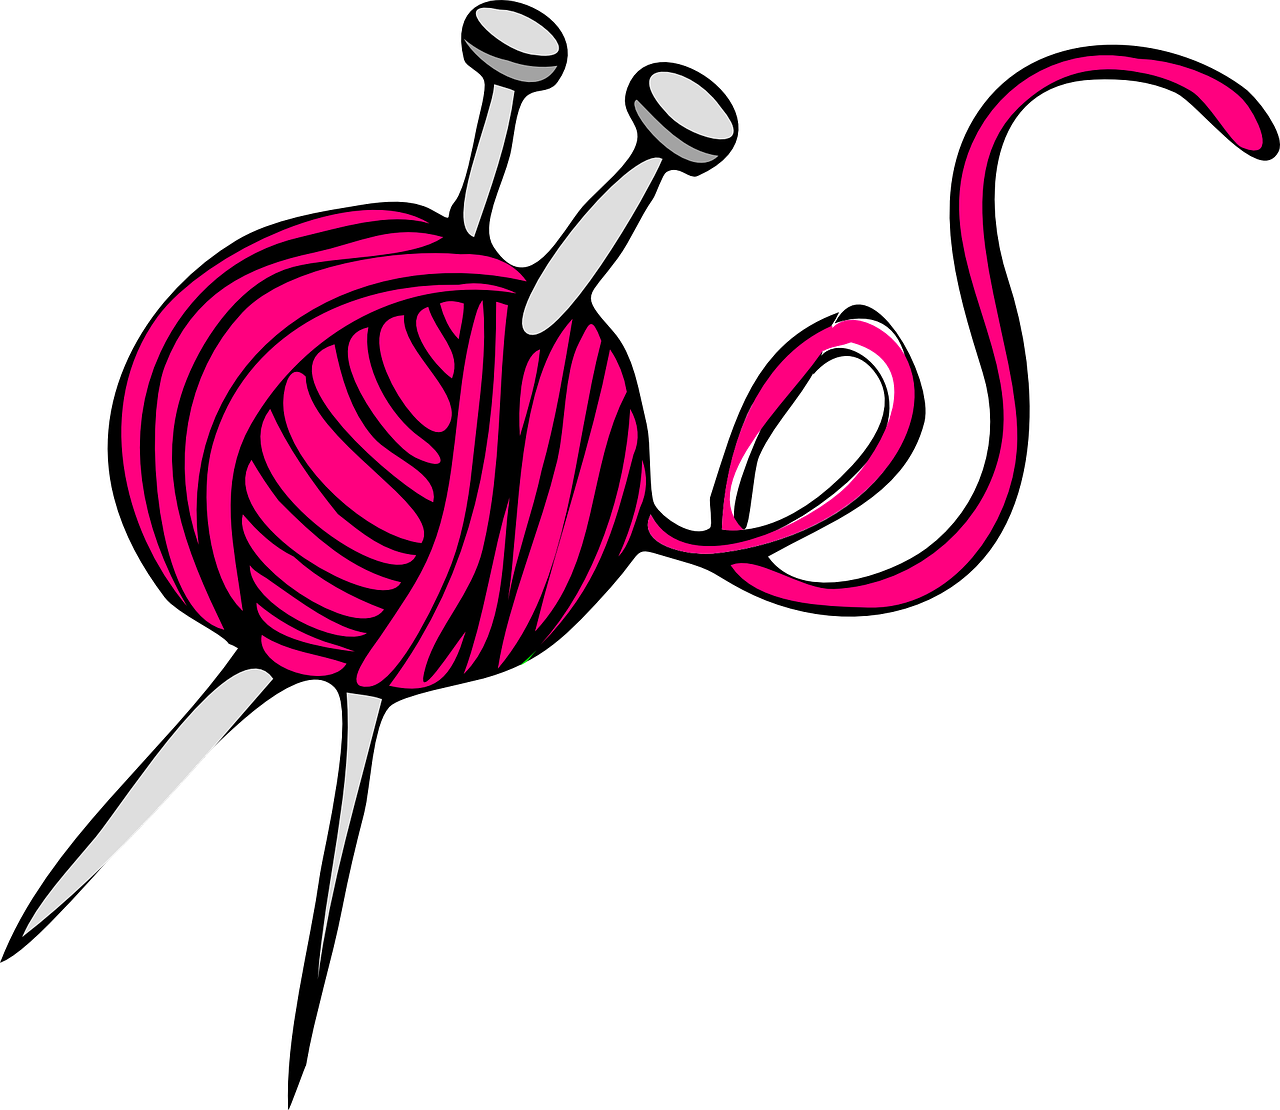 pink knit yarn free photo